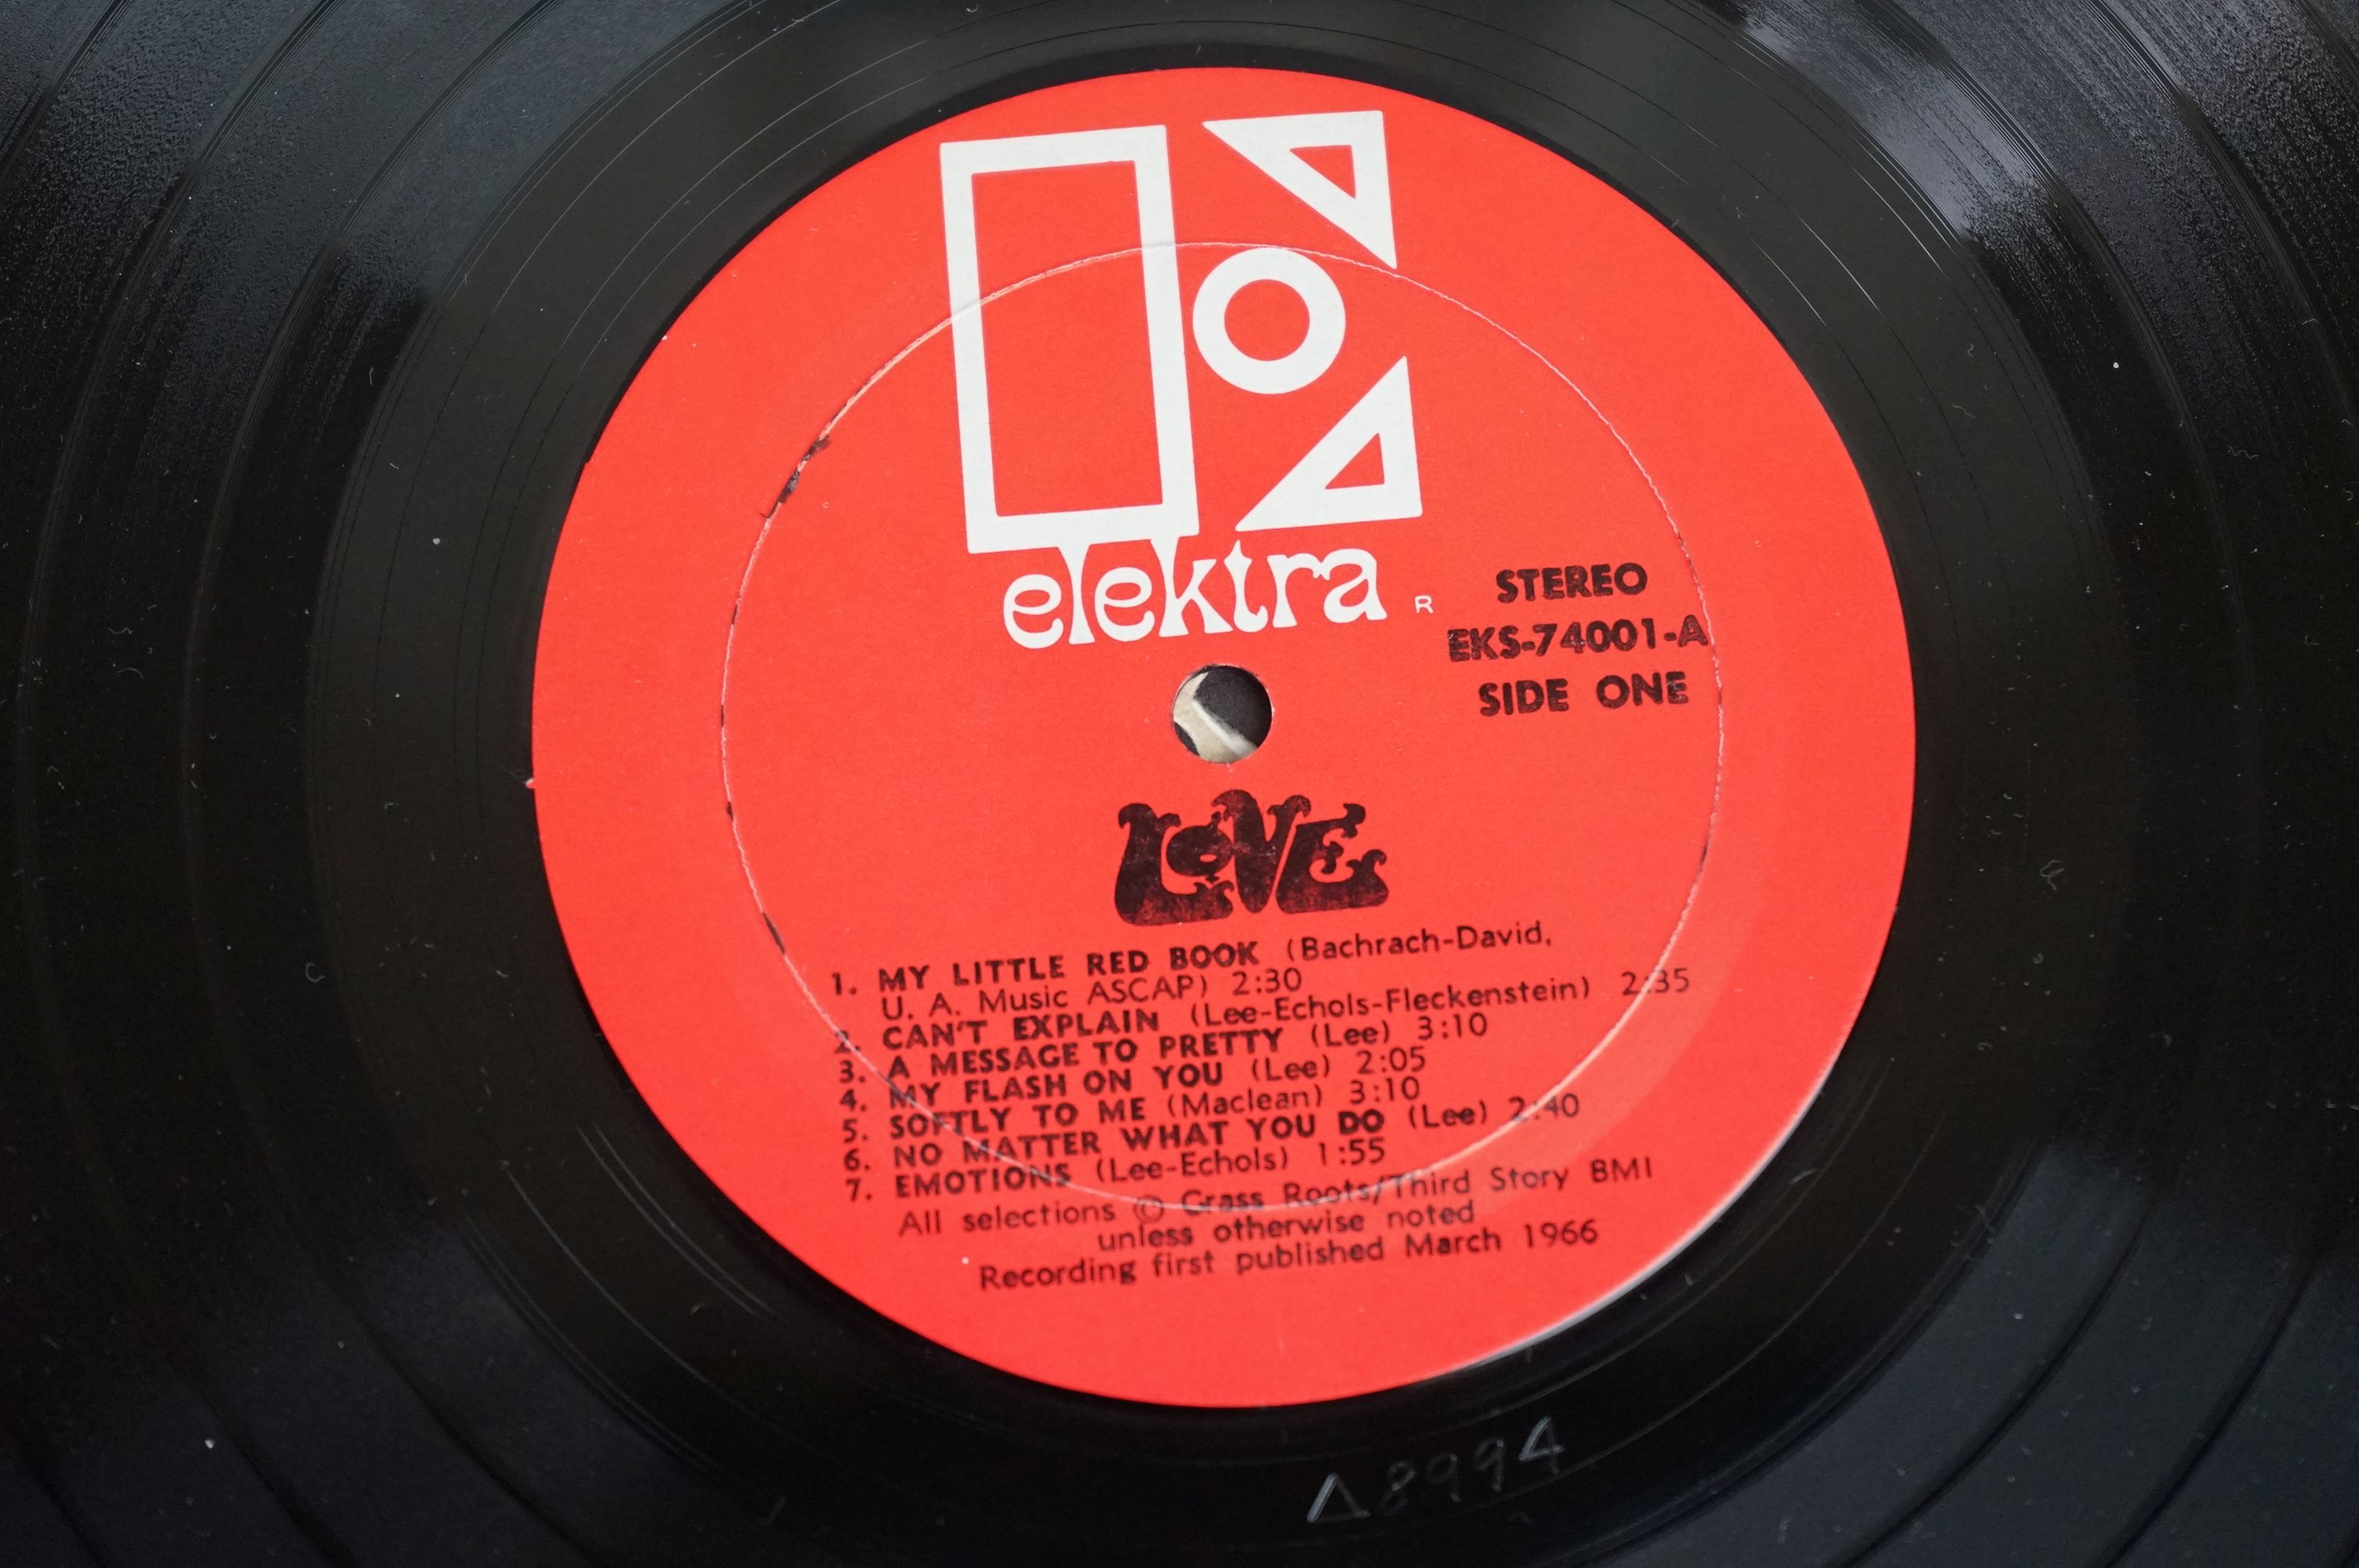 Vinyl - Love self titled EKS74001 orange label, Recording first published March 1966 bottom of - Image 3 of 4